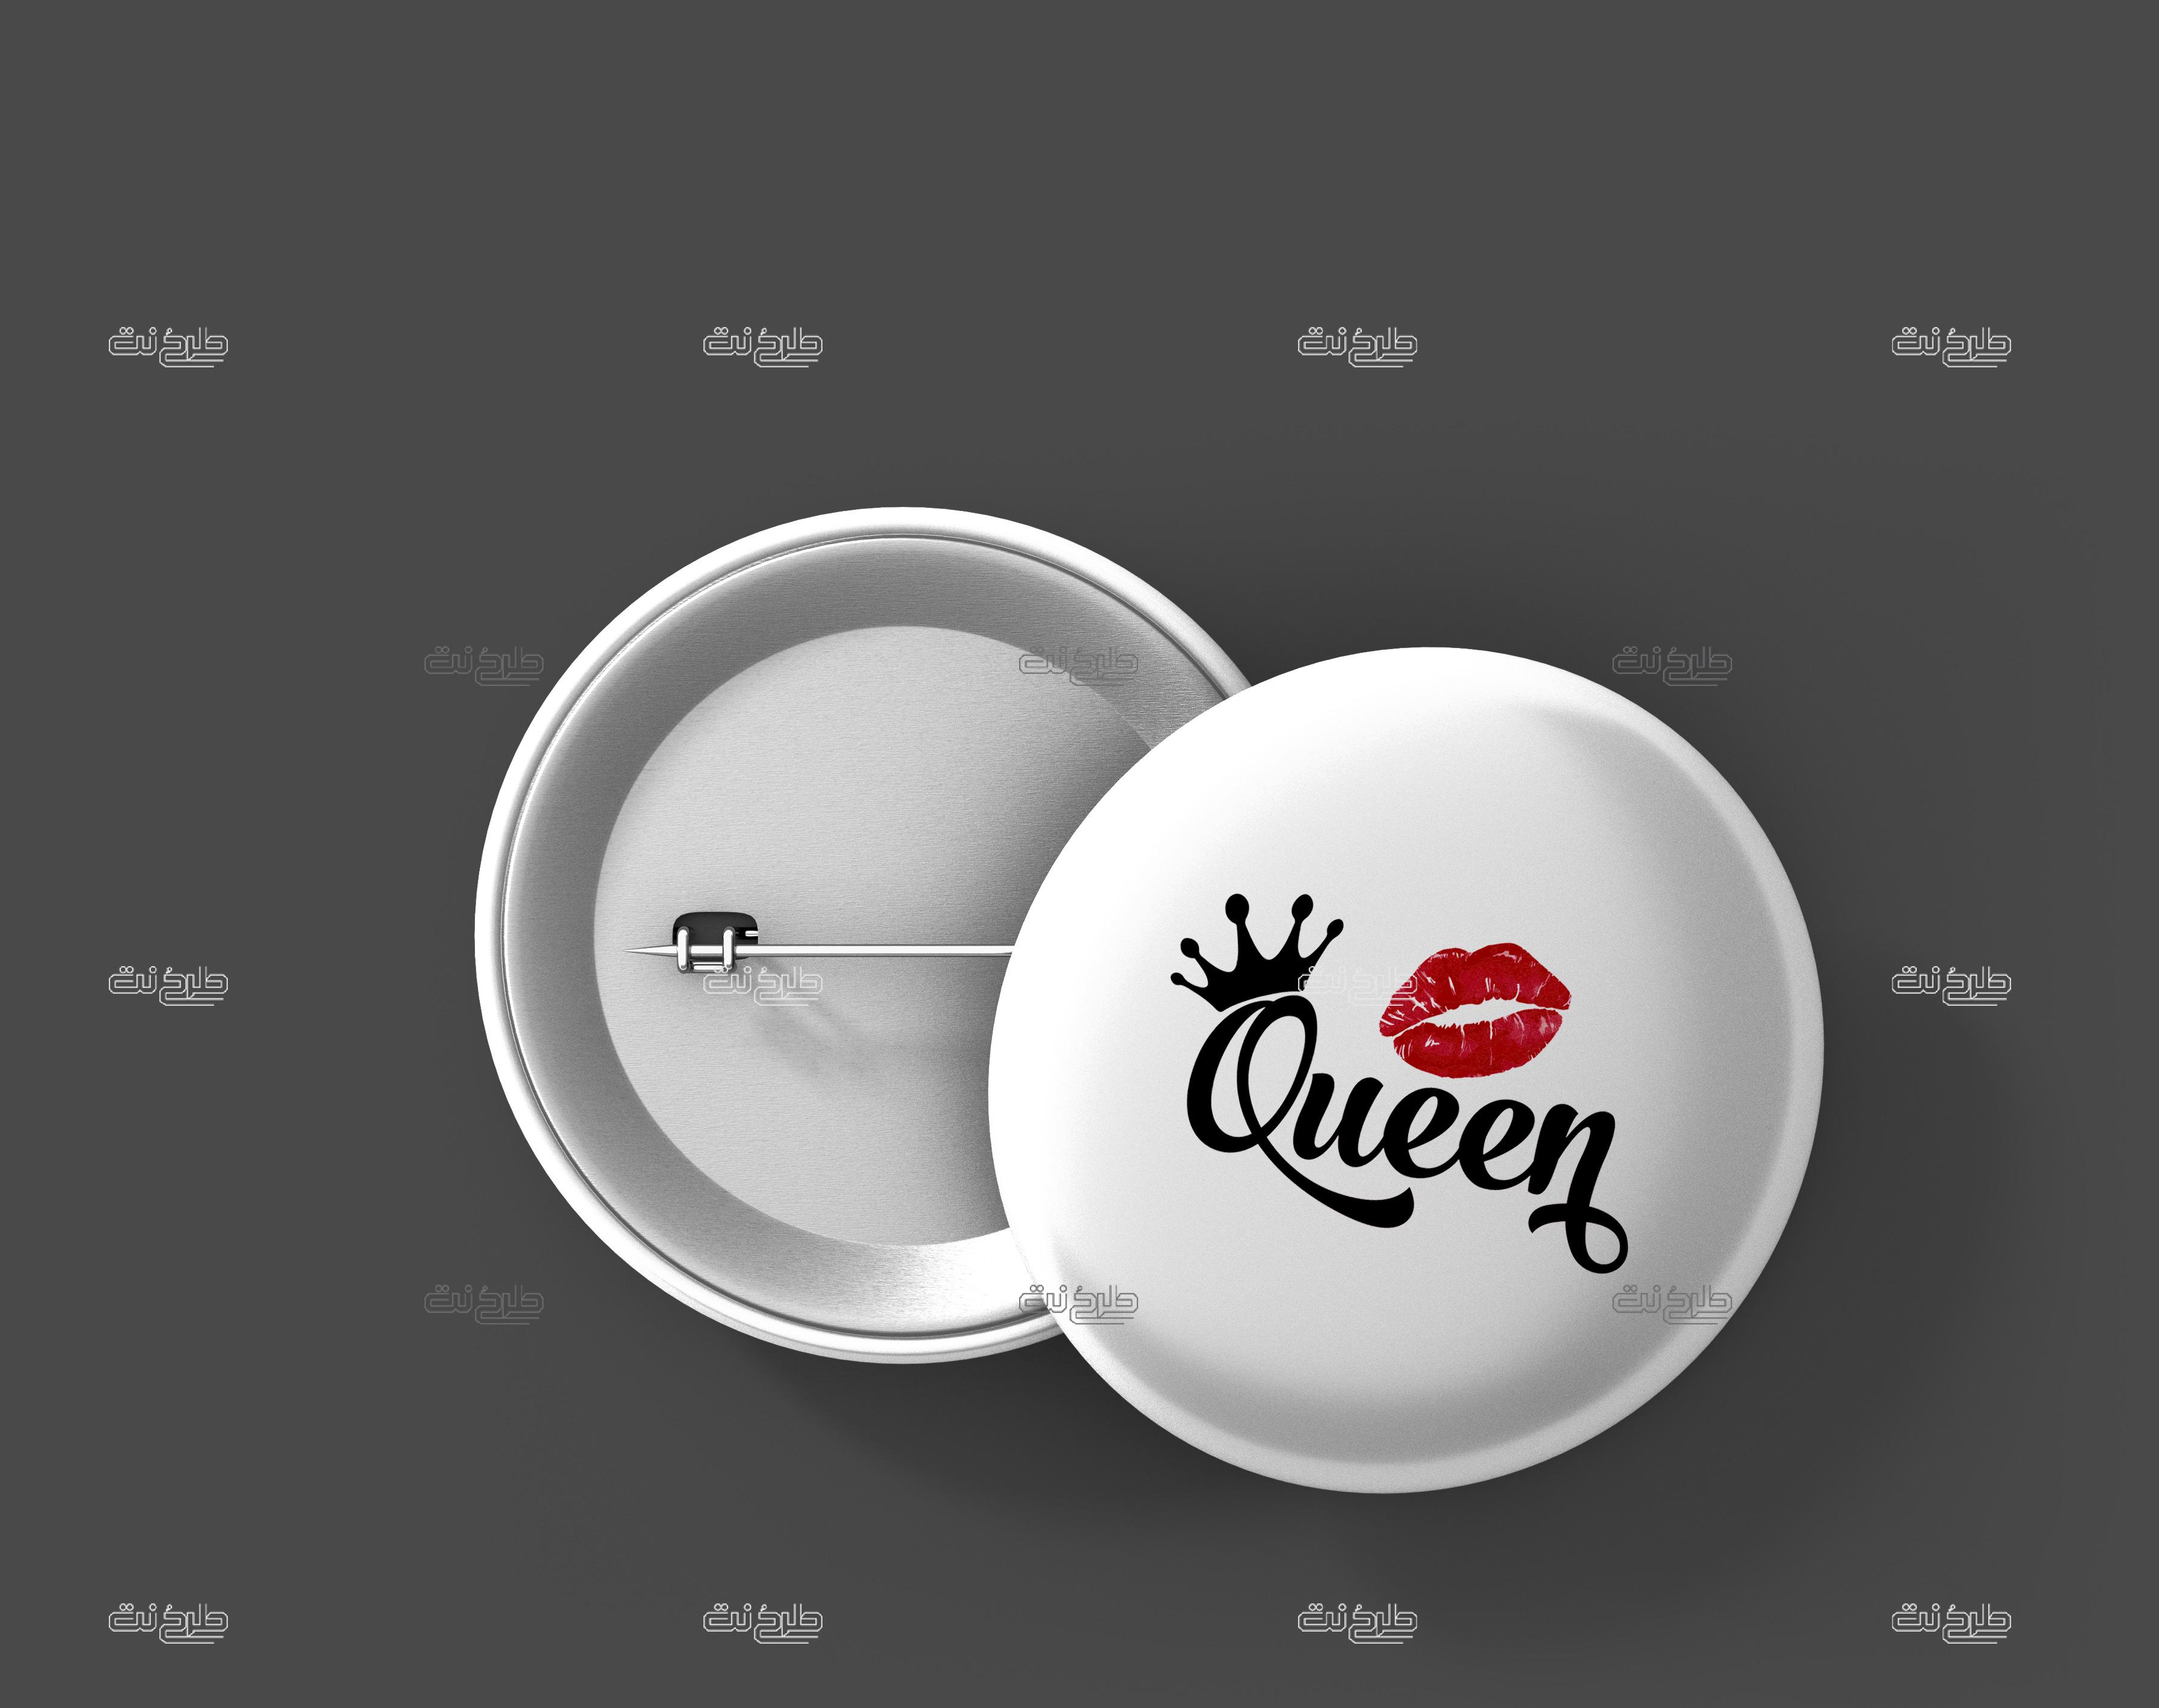 دانلود طرح لایه باز پیکسل لب و تاج با متن "Queen"